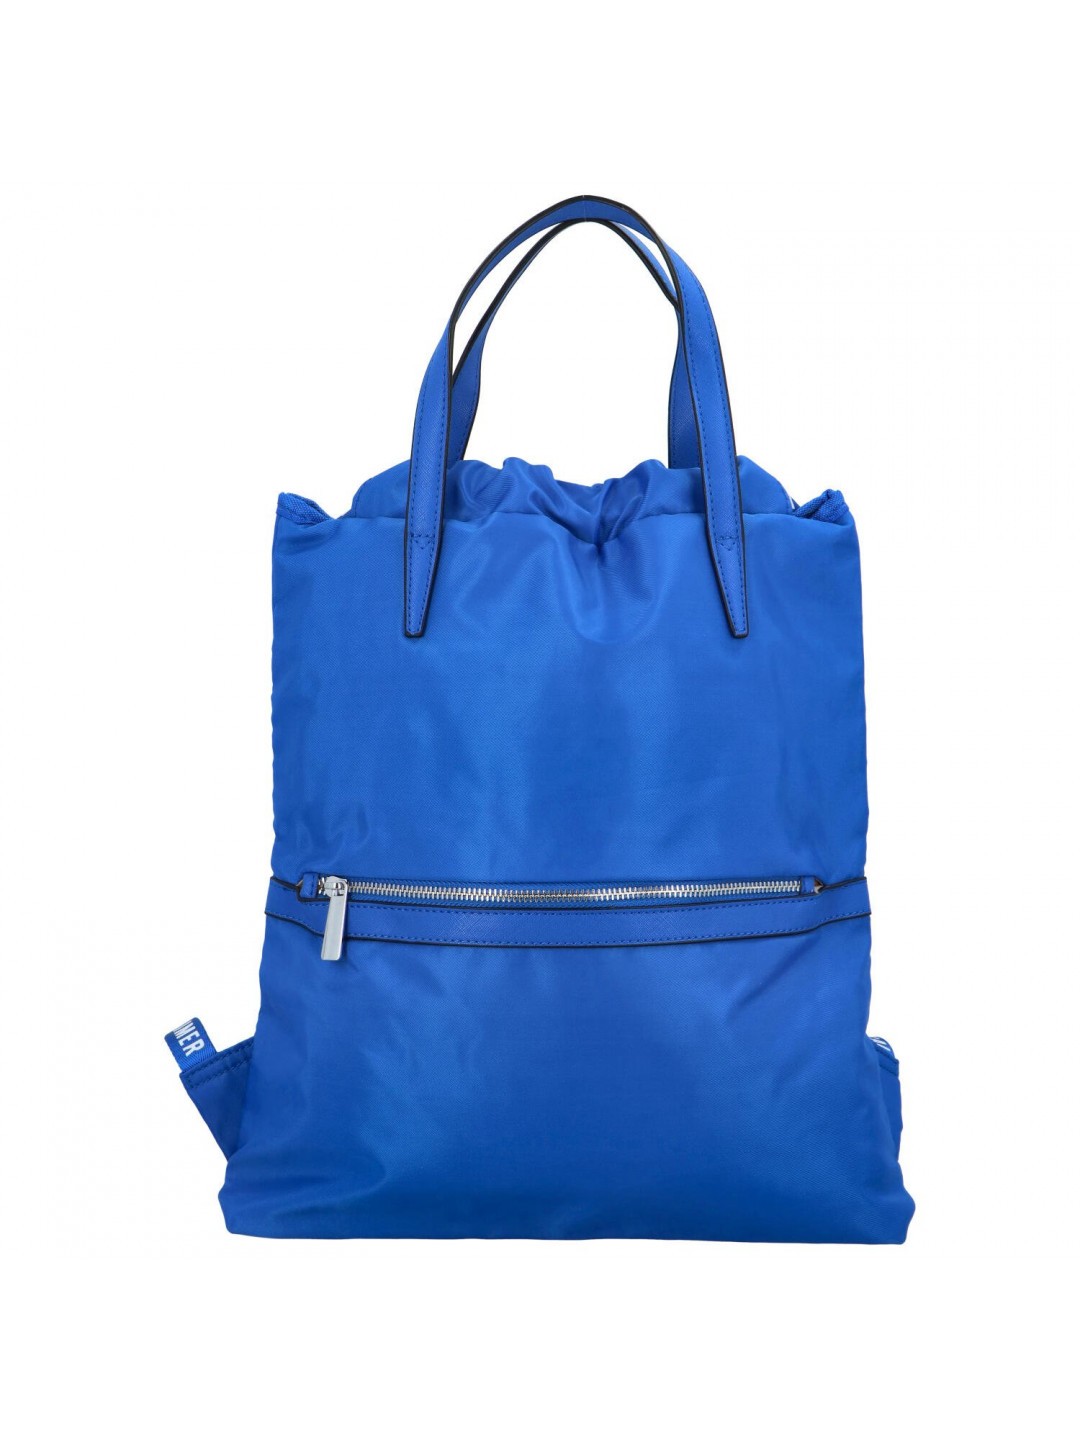 Praktický dámský batoh Dunero královská modrá